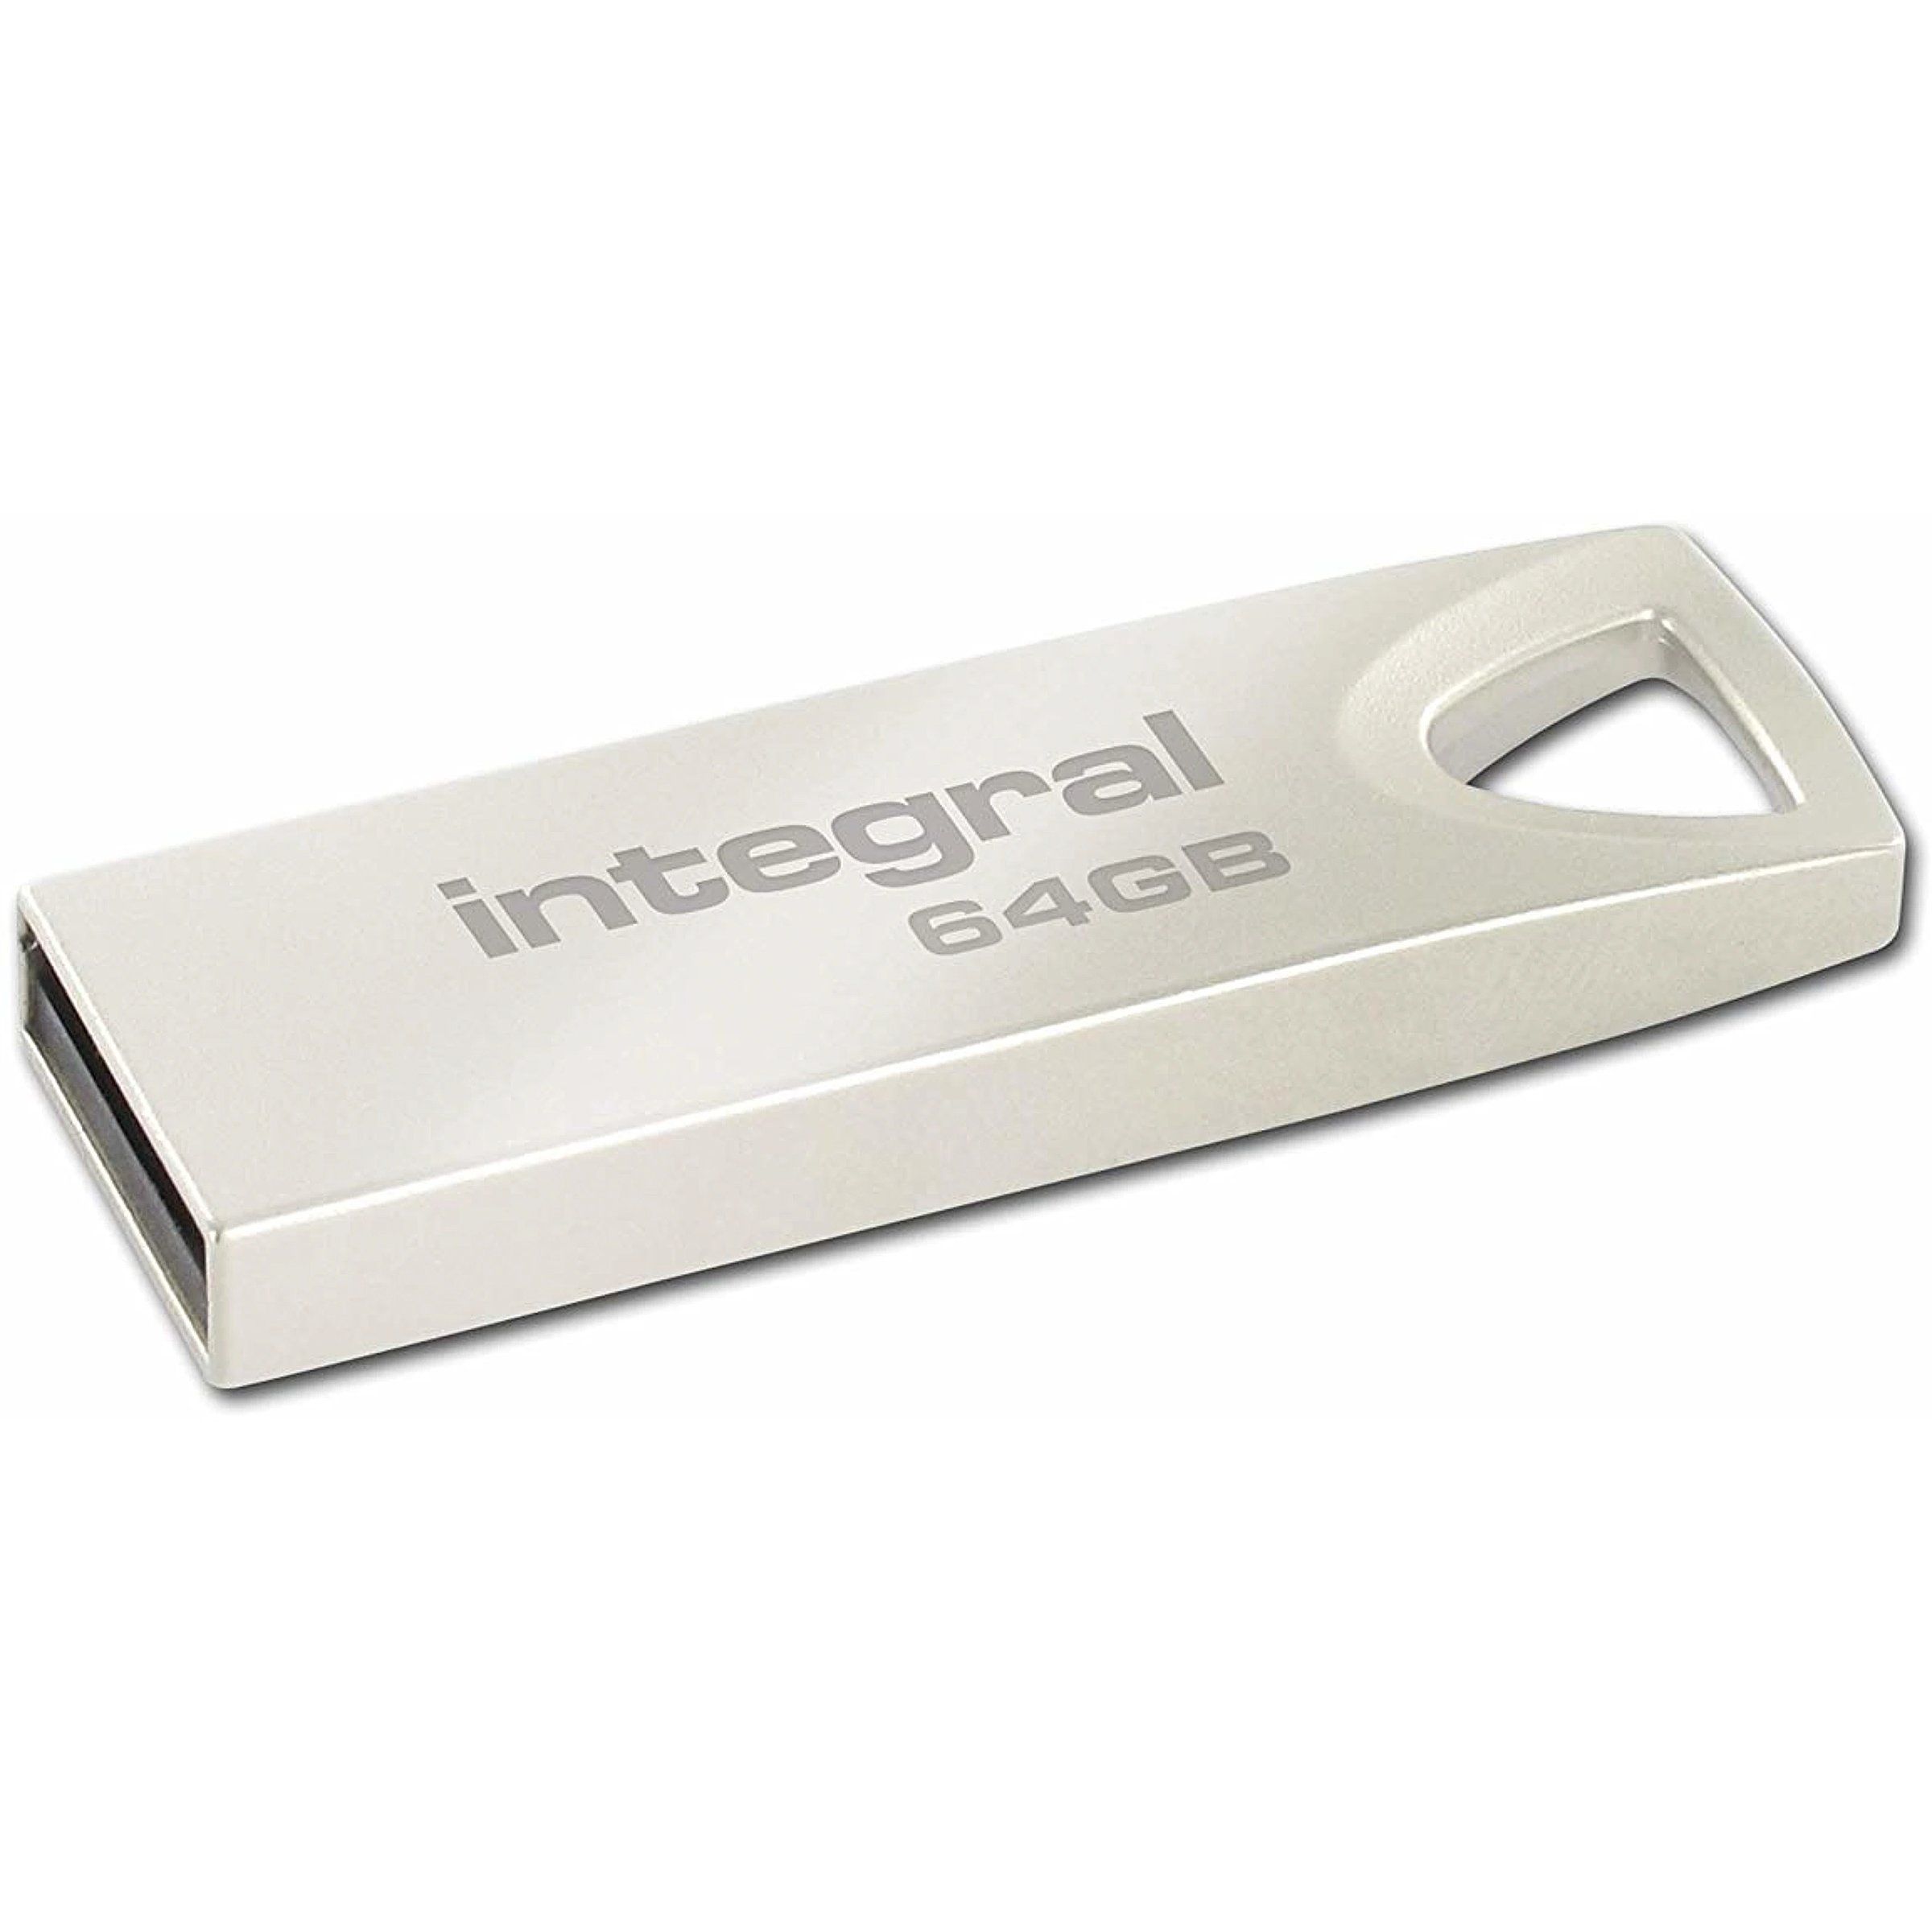 INTEGRAL INFD32GBARC Memorie flash Integral USB 32GB ARC, fara capac, pentru purtare in breloc_2